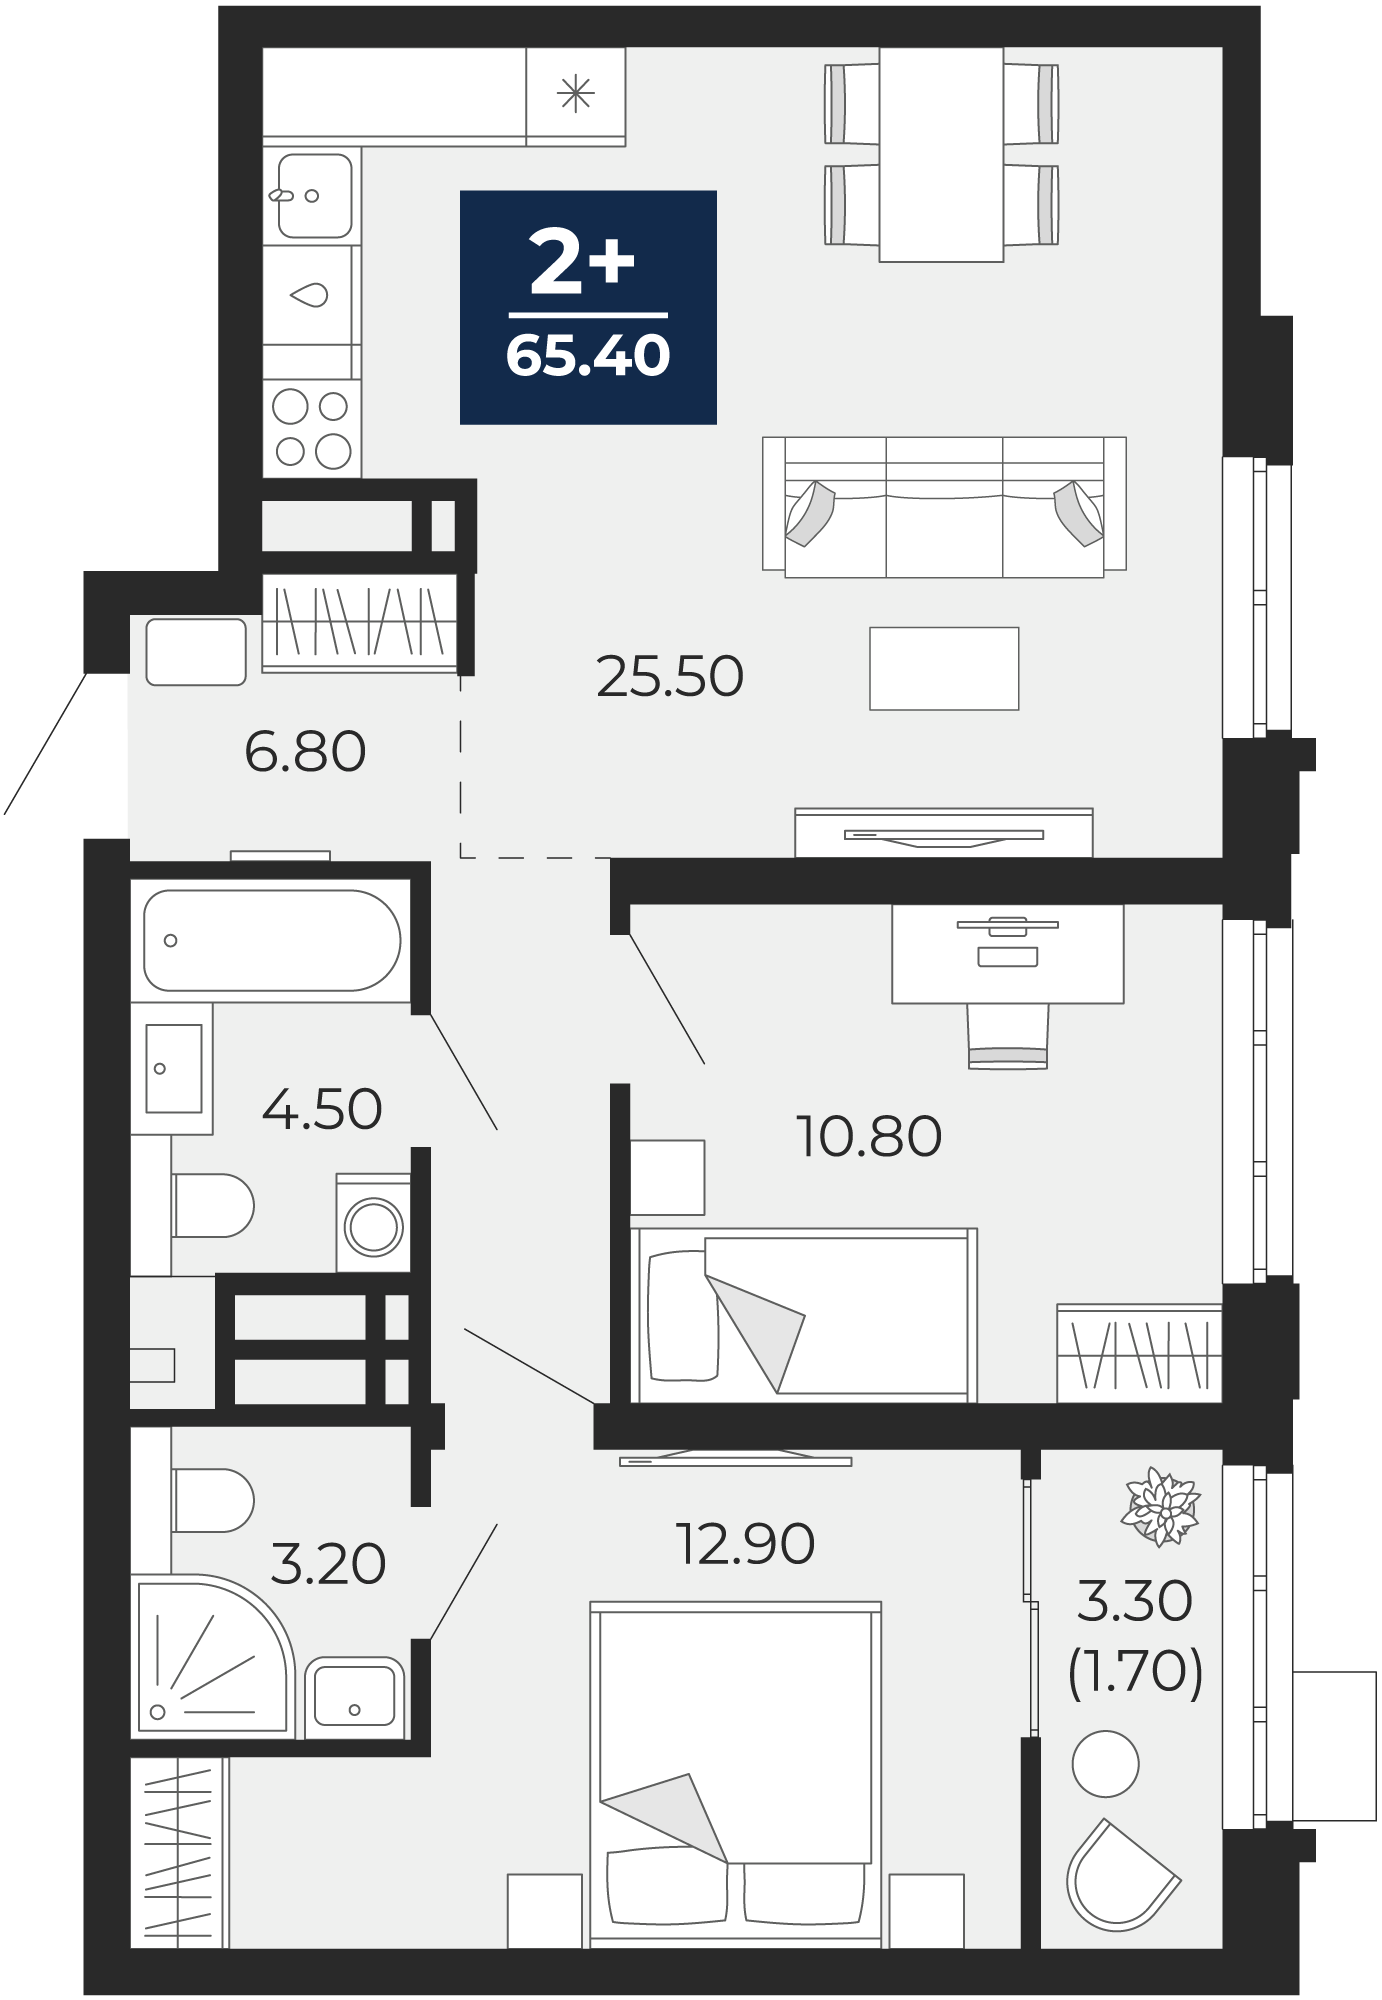 Квартира № 159, 2-комнатная, 65.4 кв. м, 11 этаж